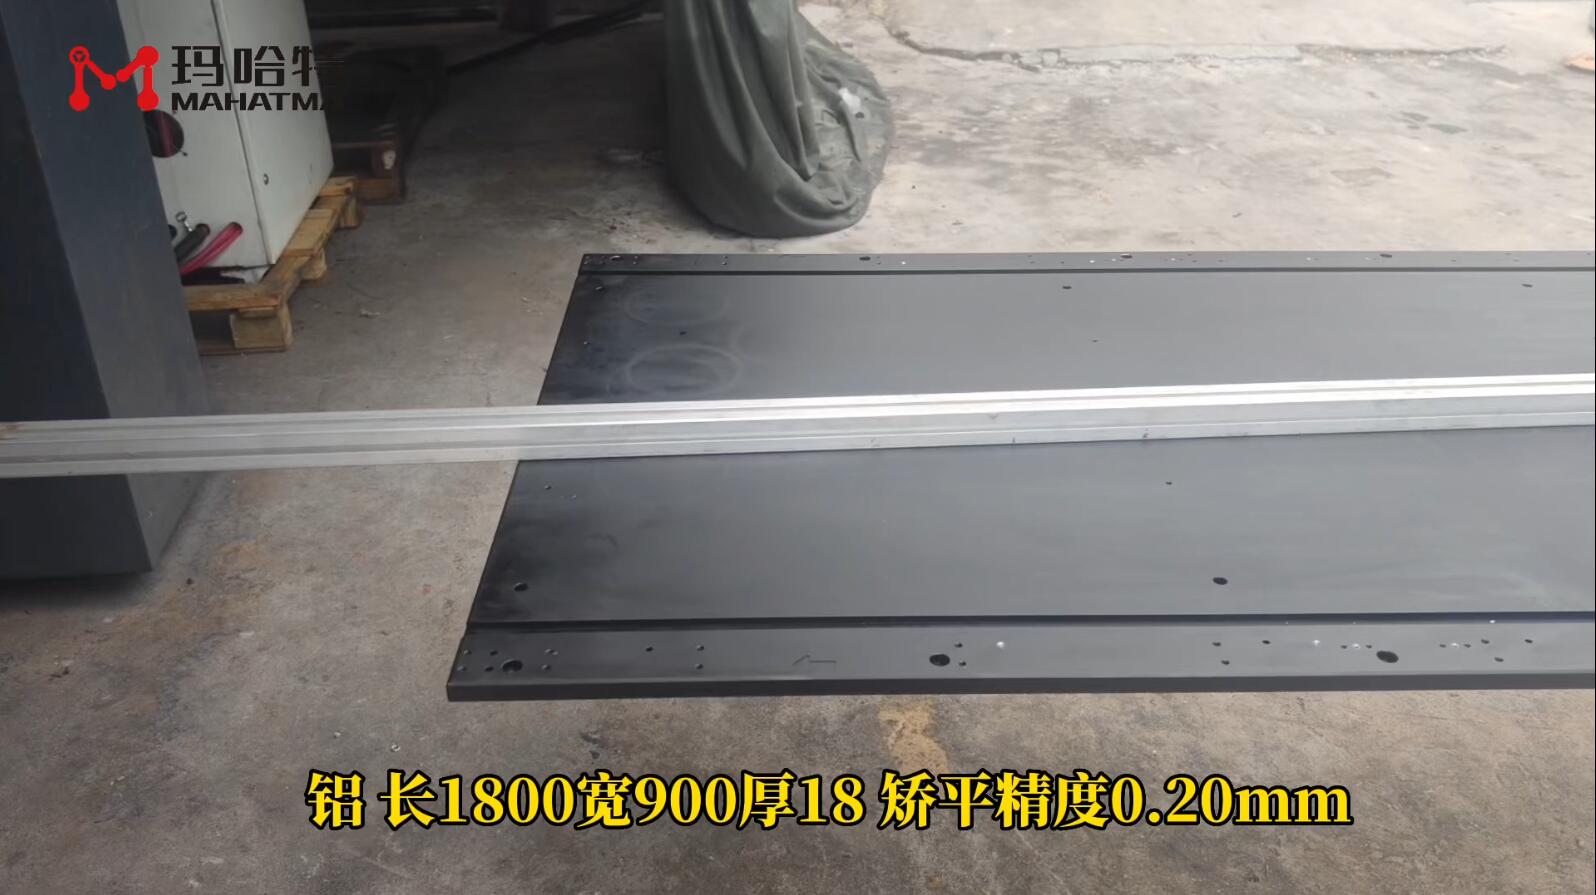 铝 MHT200-1650 长方形 长1800宽900厚18 矫平精度0.20mm.